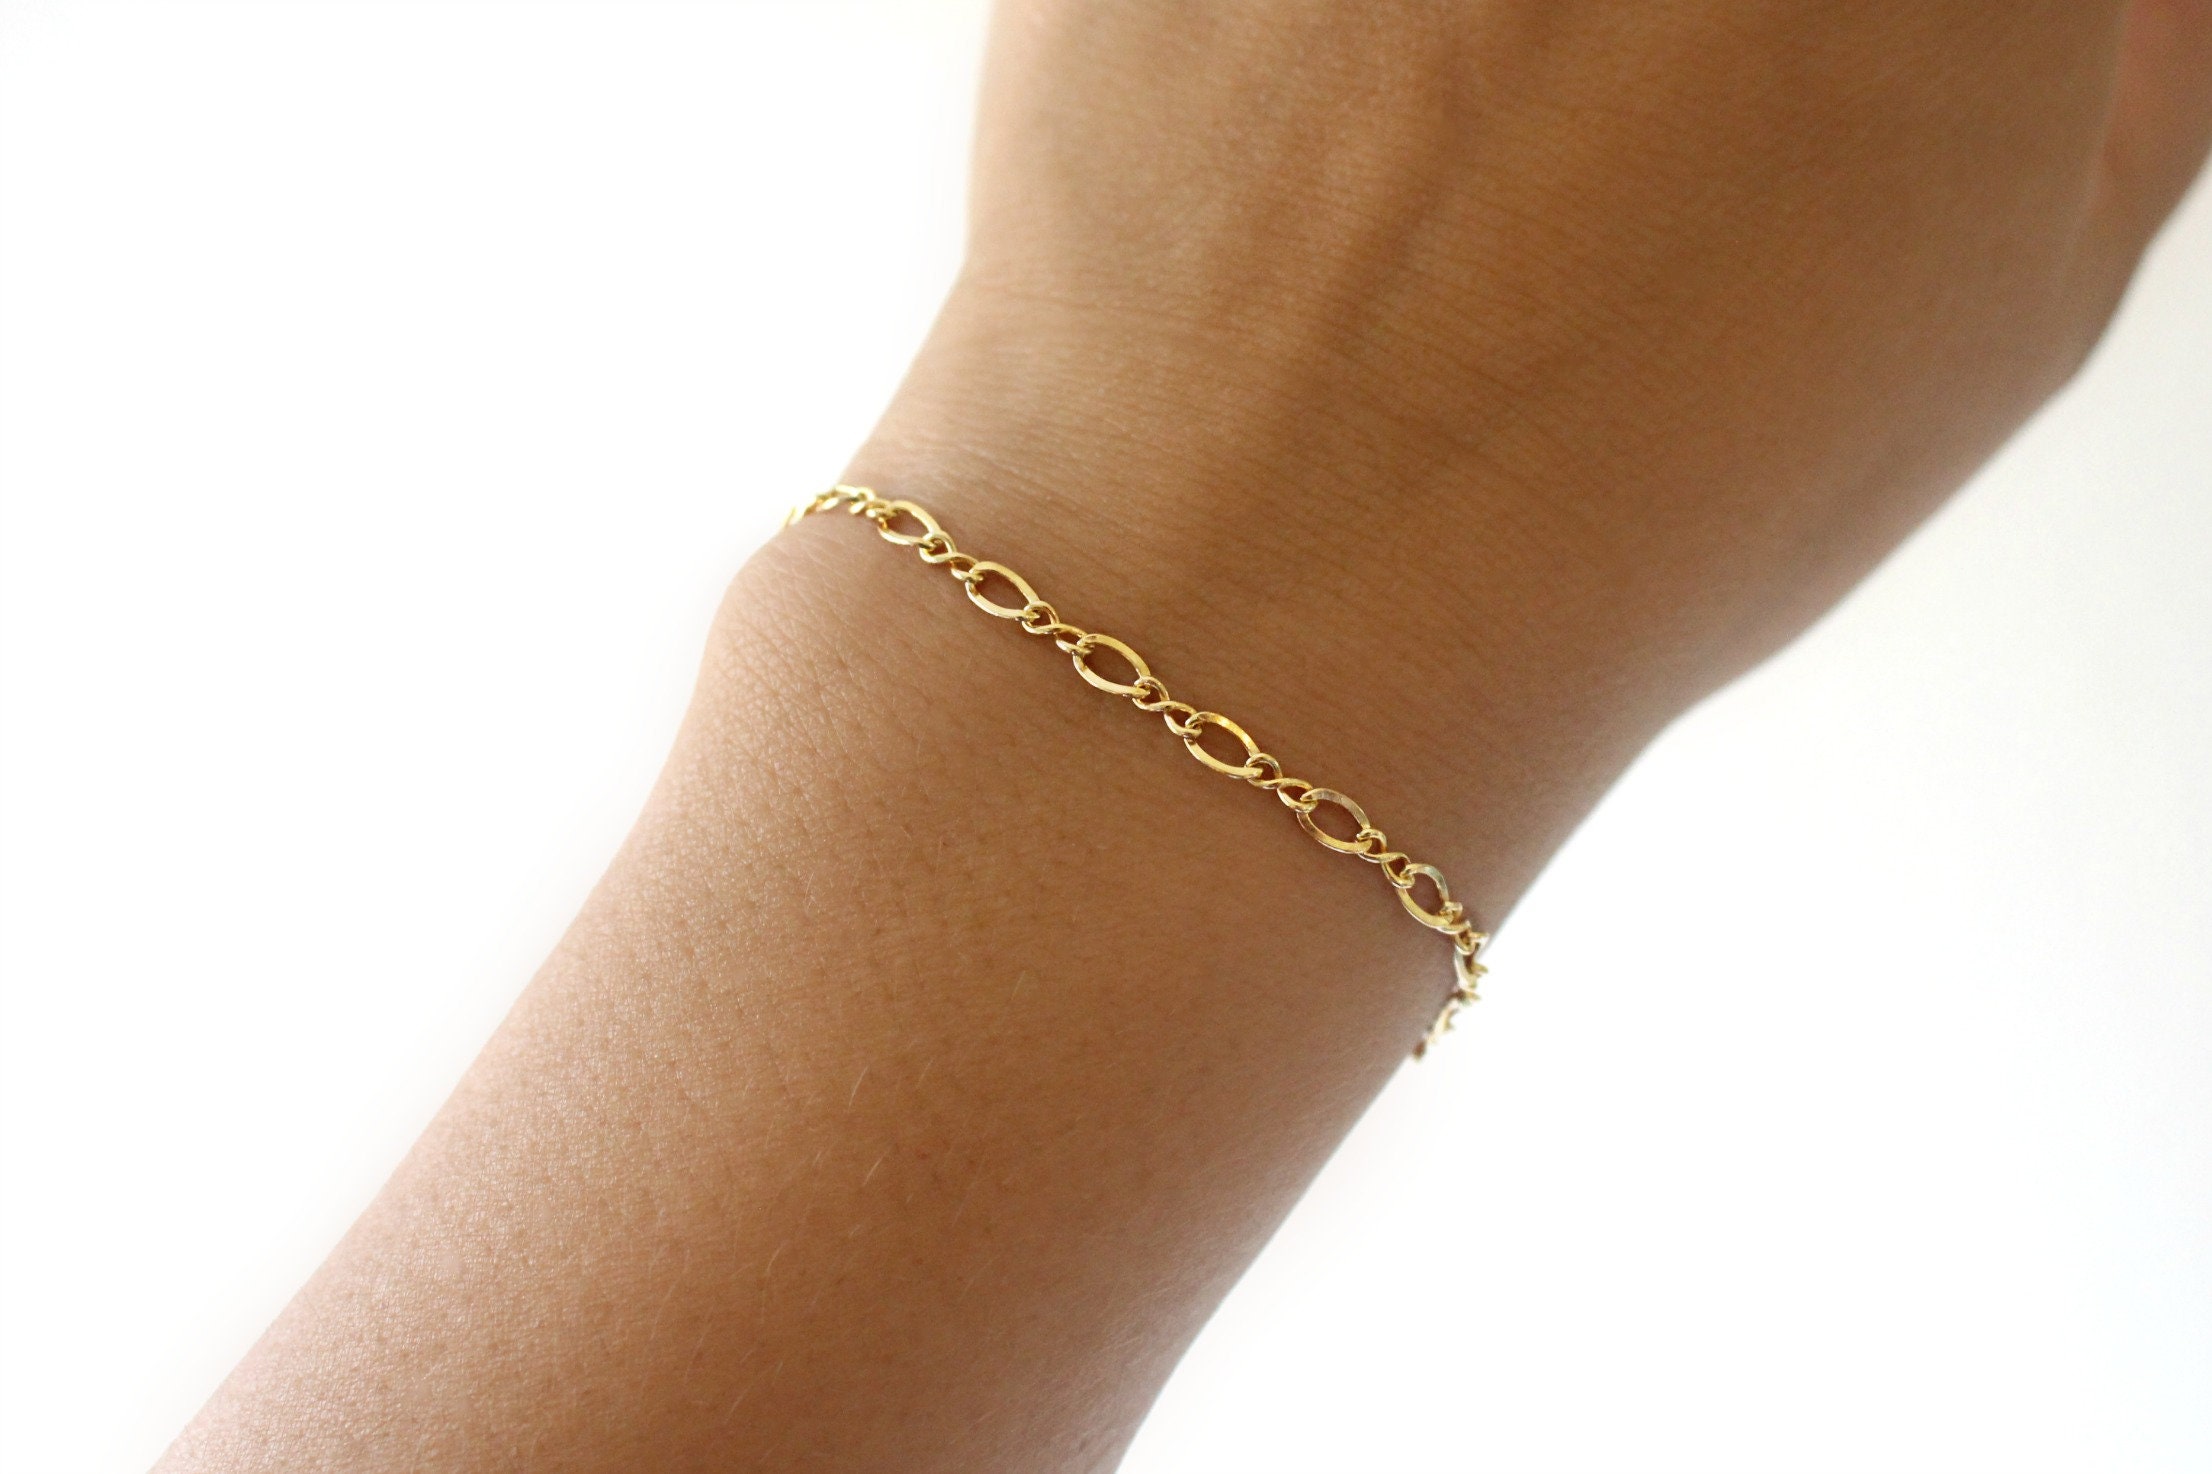 Darling Bow bracelet 14k gold filled.